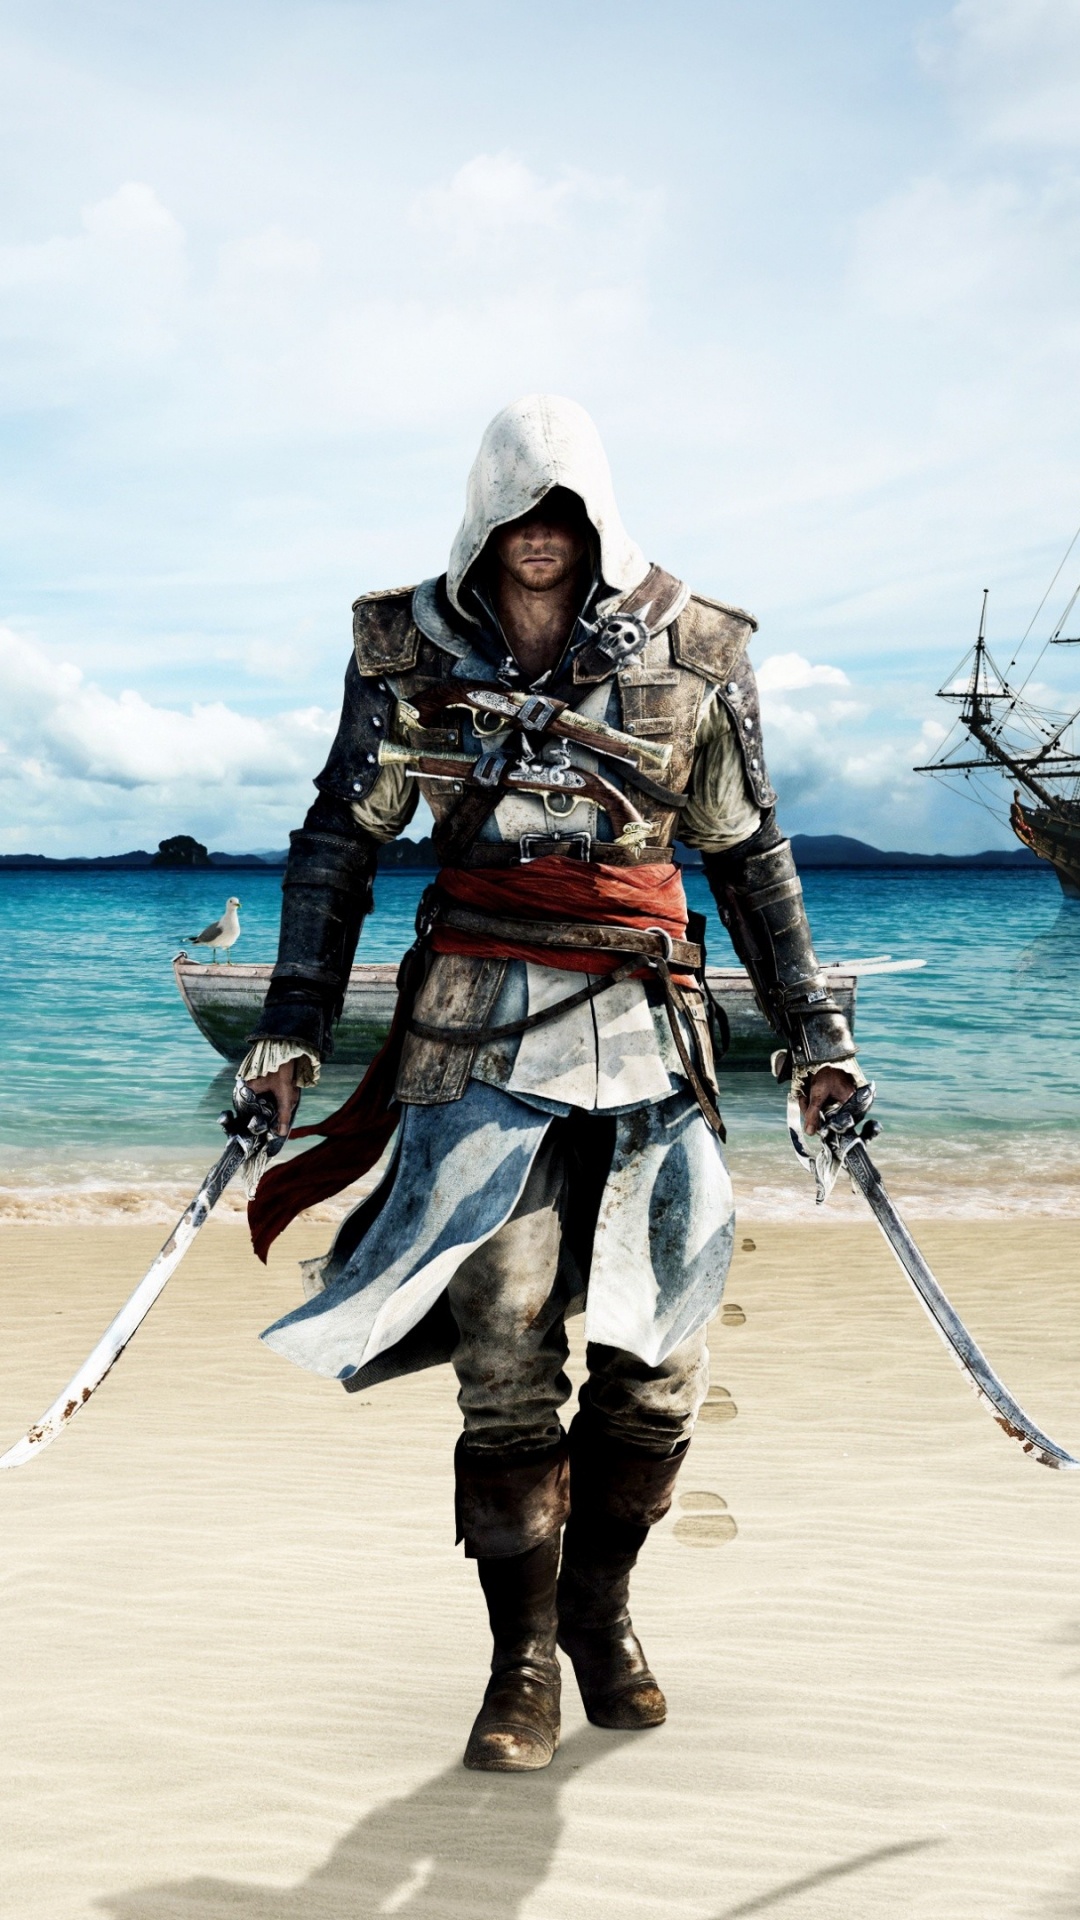 Turismo, Mar, Vacaciones, Viaje, Assassins Creed III. Wallpaper in 1080x1920 Resolution